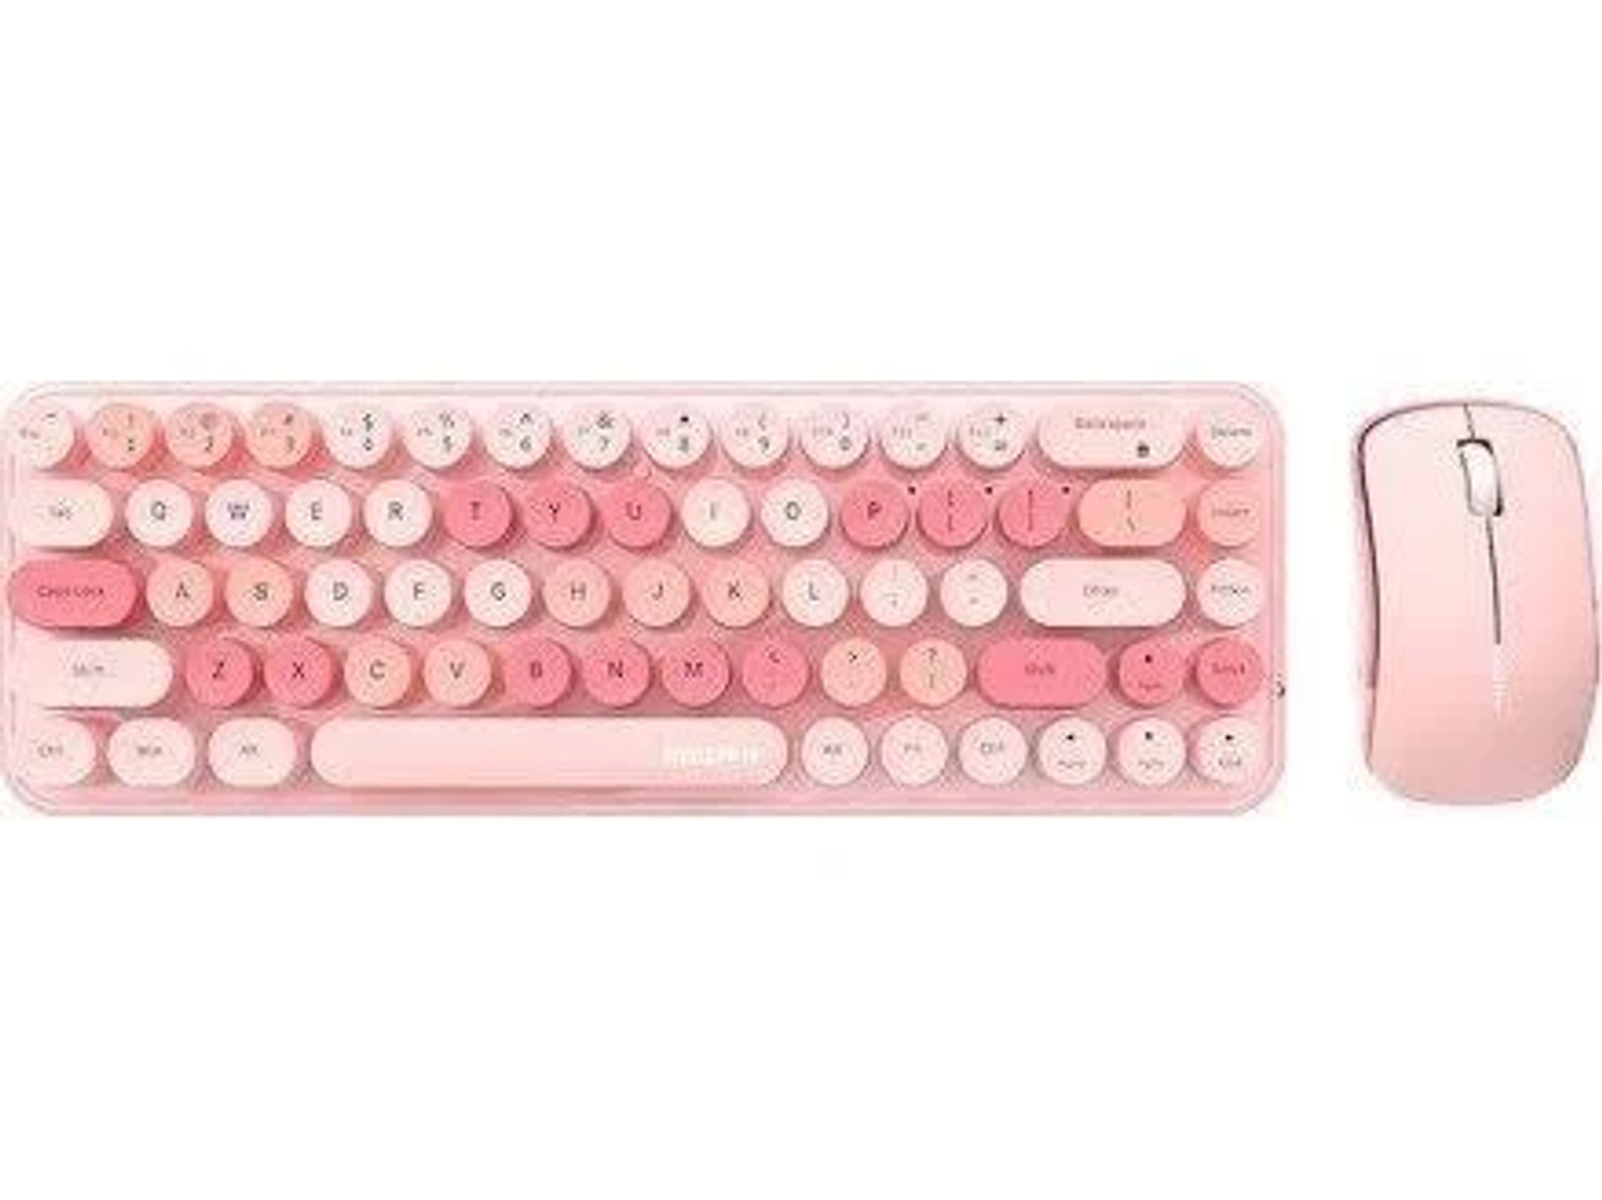 Pink, MOFII SMK-676367AG Tastatur